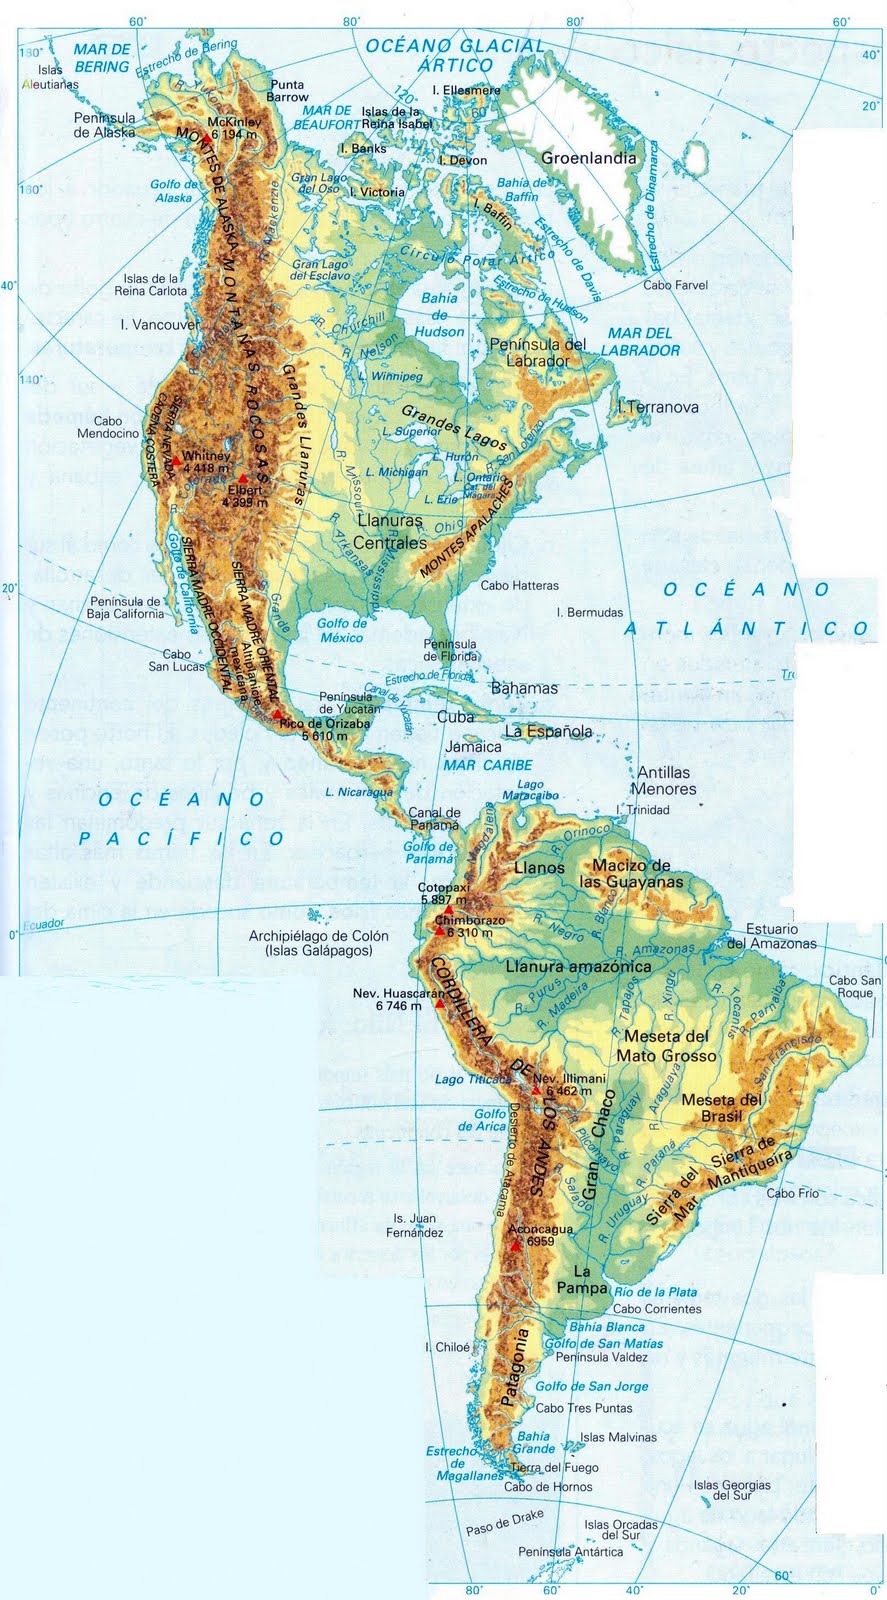 Mapa de America con nombres - Mapa Físico, Geográfico, Político